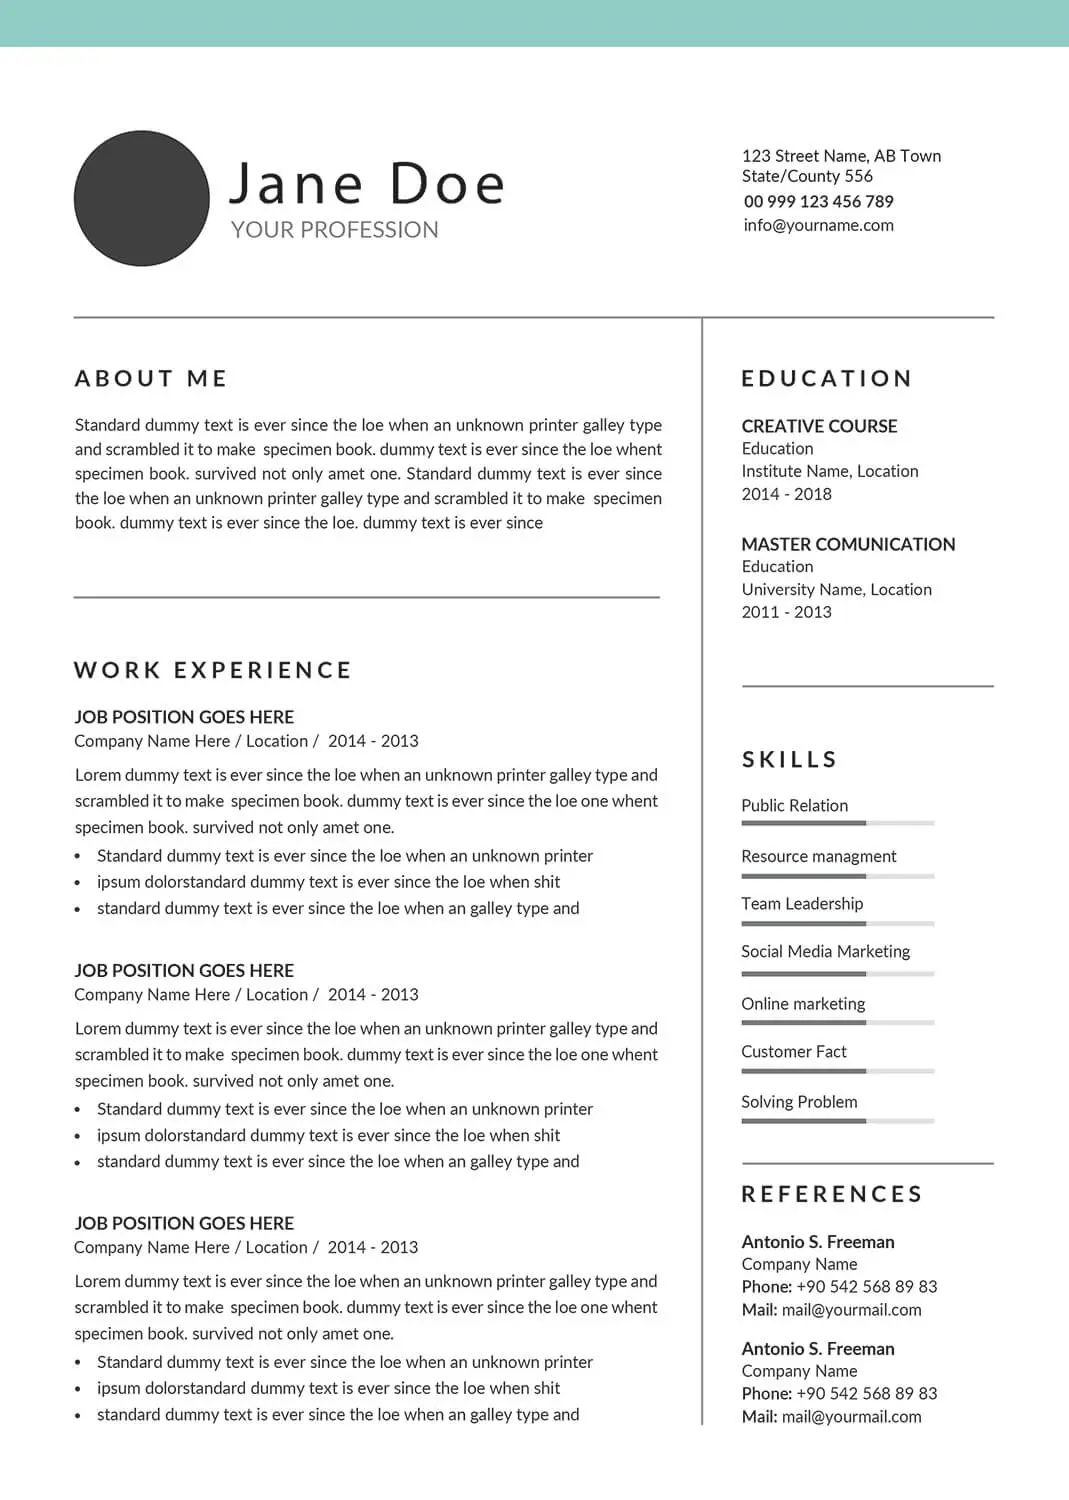 scientist-resume